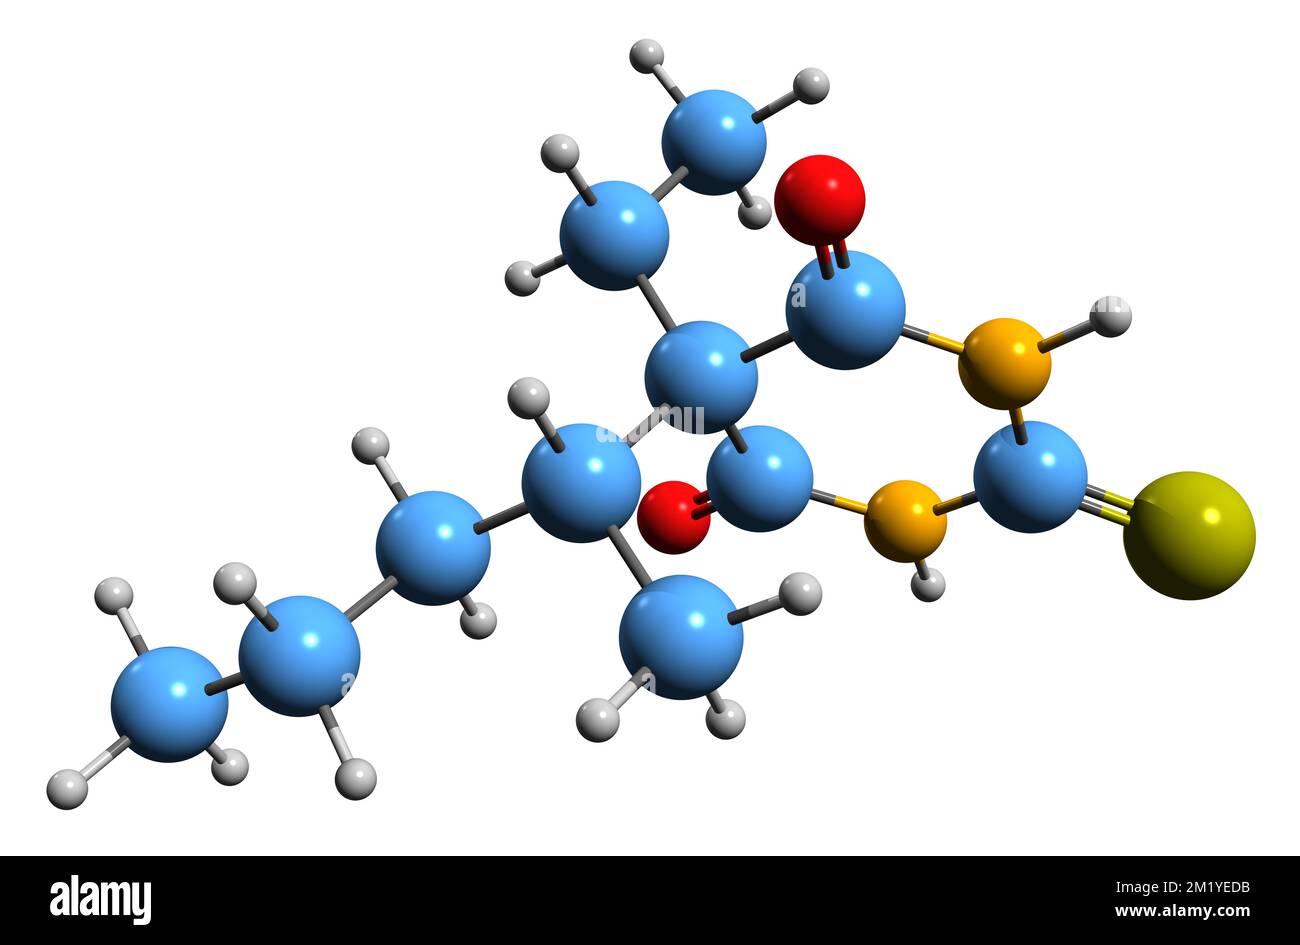 3D-Bild der thiopentalen Skelettformel - molekularchemische Struktur von kurzwirkendem Barbiturat, isoliert auf weißem Hintergrund Stockfoto